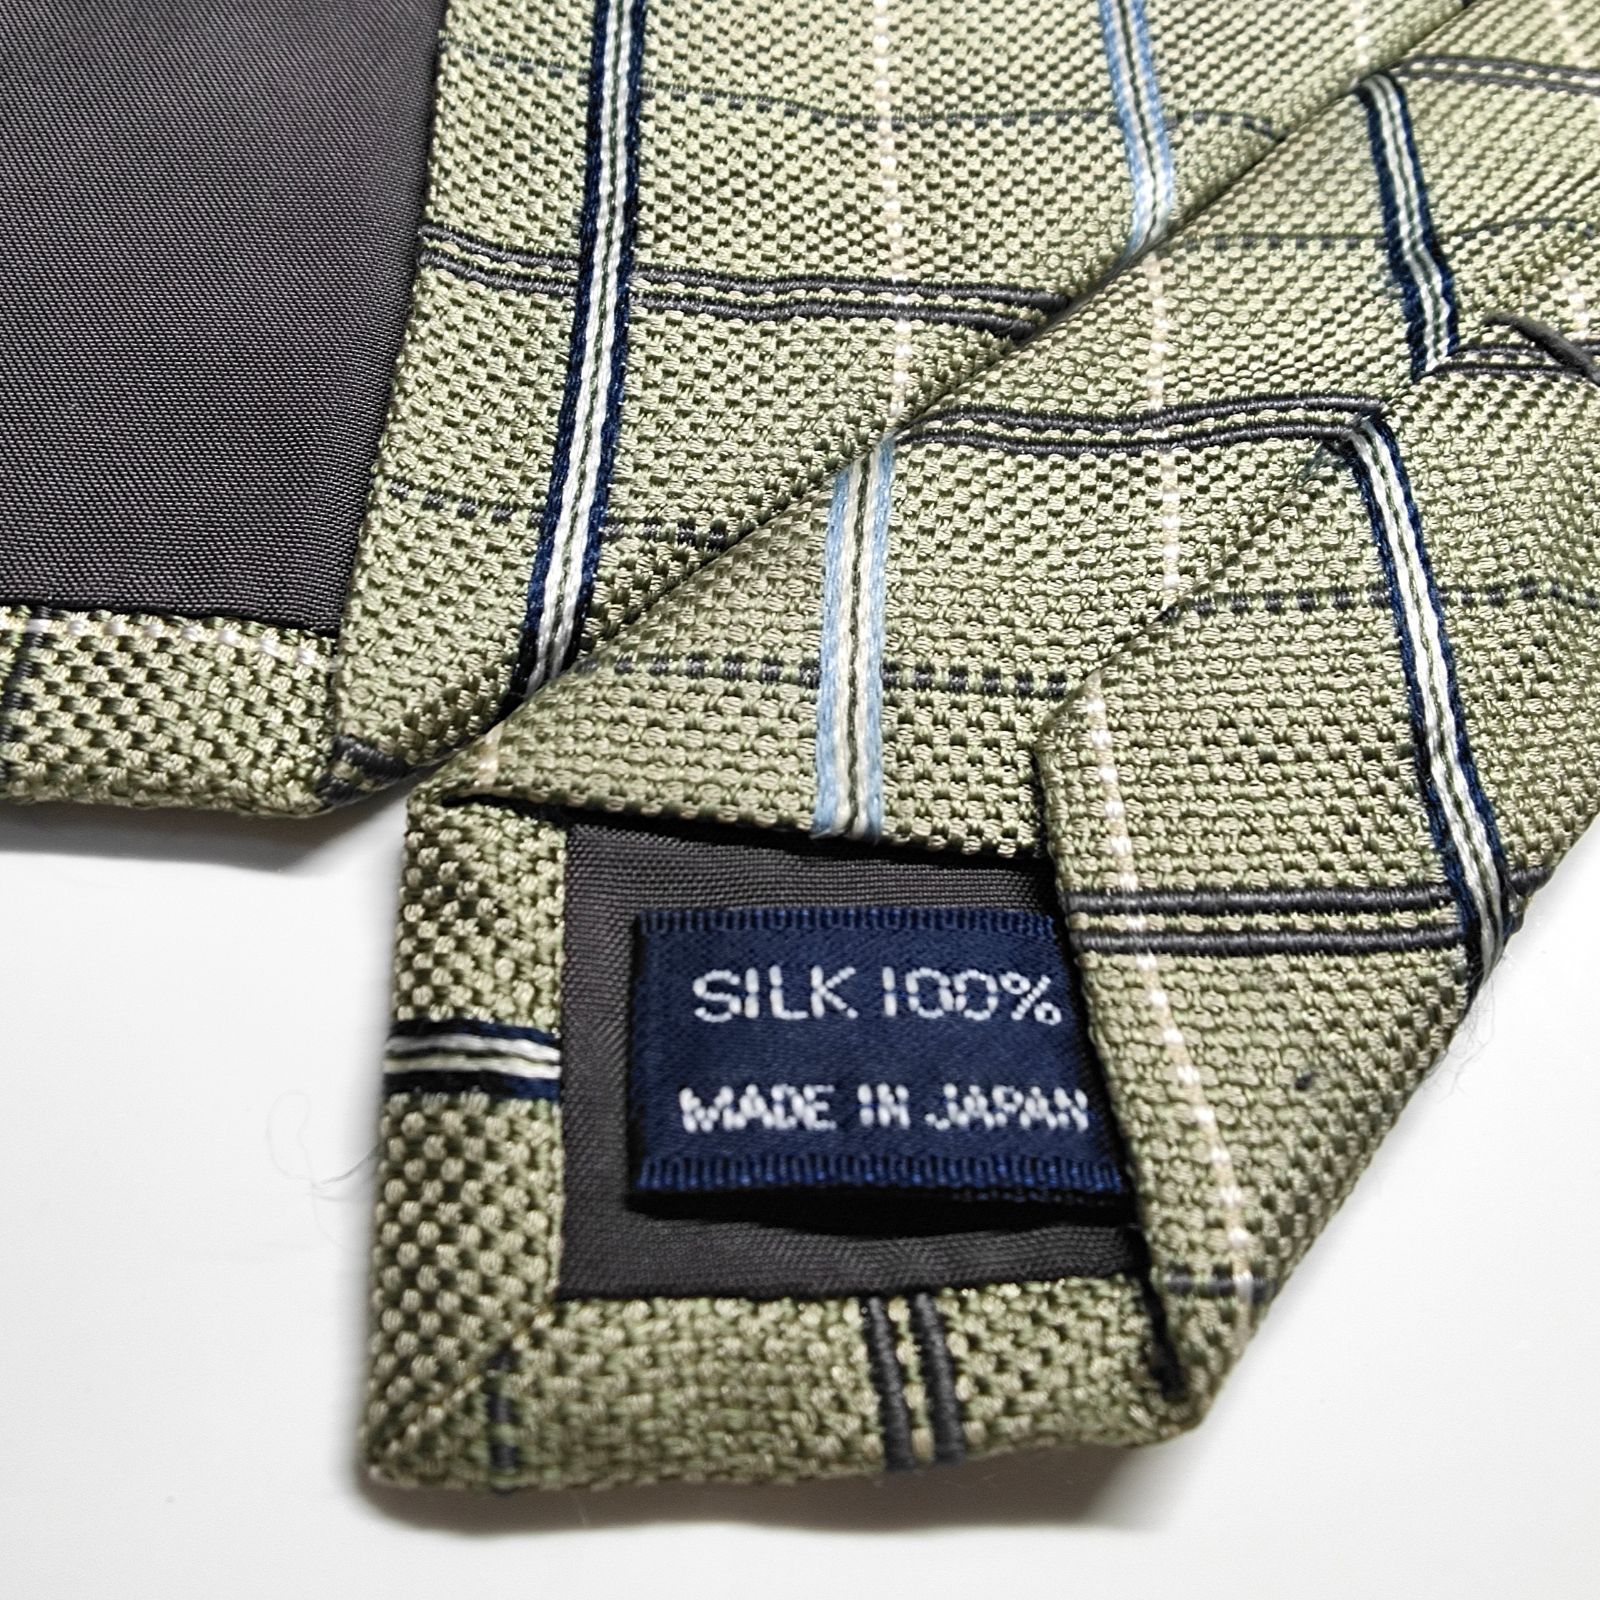 ラルフローレン 日本製 シルク100% ネクタイ